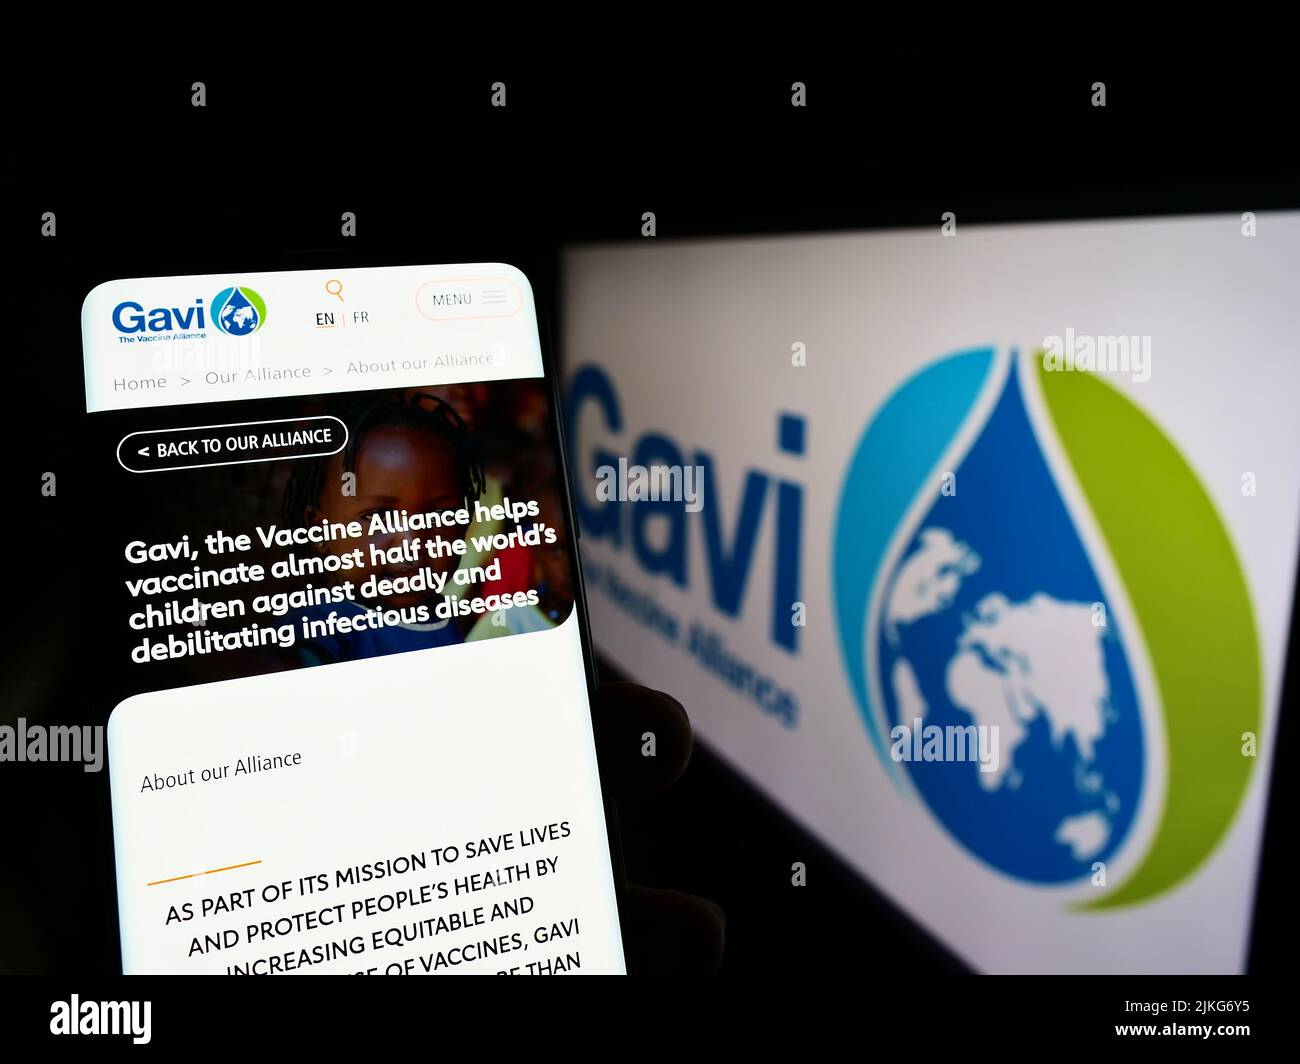 Persona que sostiene el teléfono celular con el sitio web de la asociación de salud Gavi, la Alianza de Vacunas en la pantalla con el logotipo. Enfoque en el centro de la pantalla del teléfono. Foto de stock